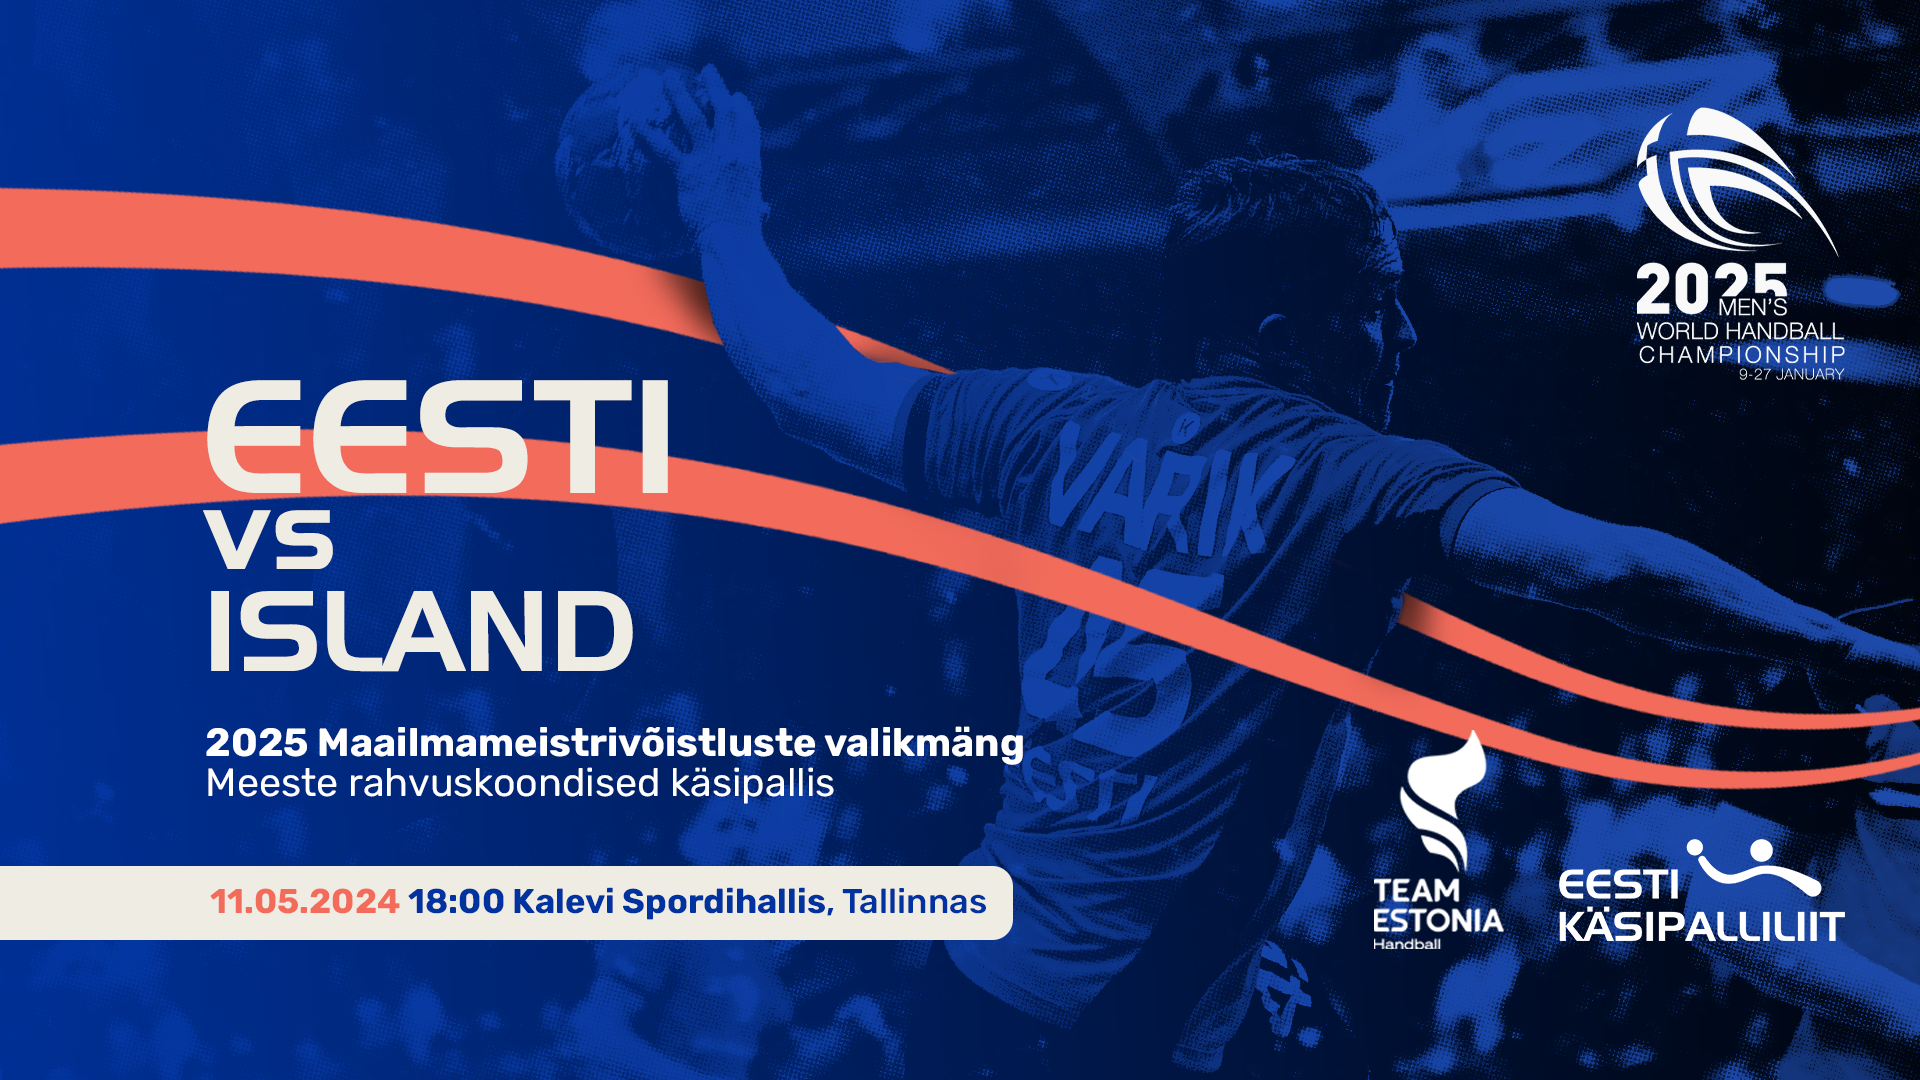 Eesti vs Islandi 11.05.2024 kell 18:00 Tallinnas Kalevi Spordihallis